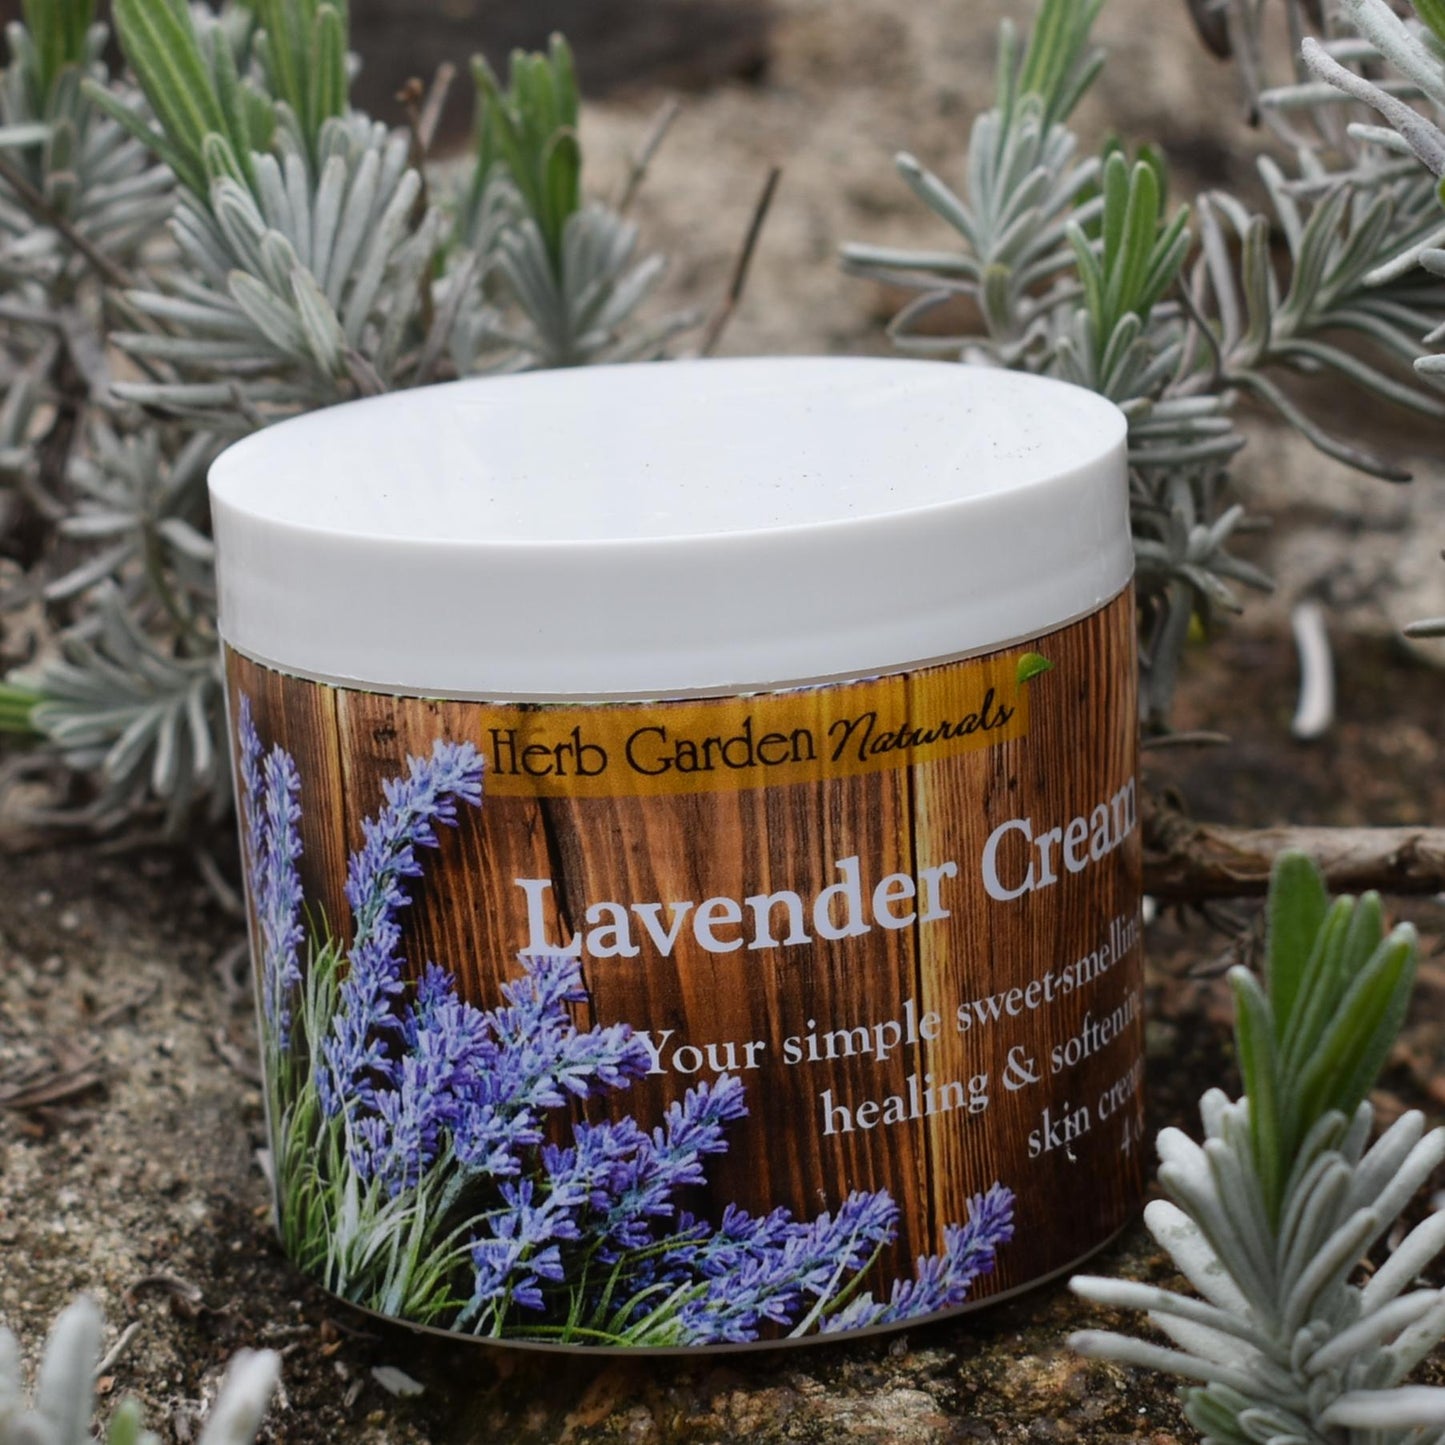 Lavender Organic Cream